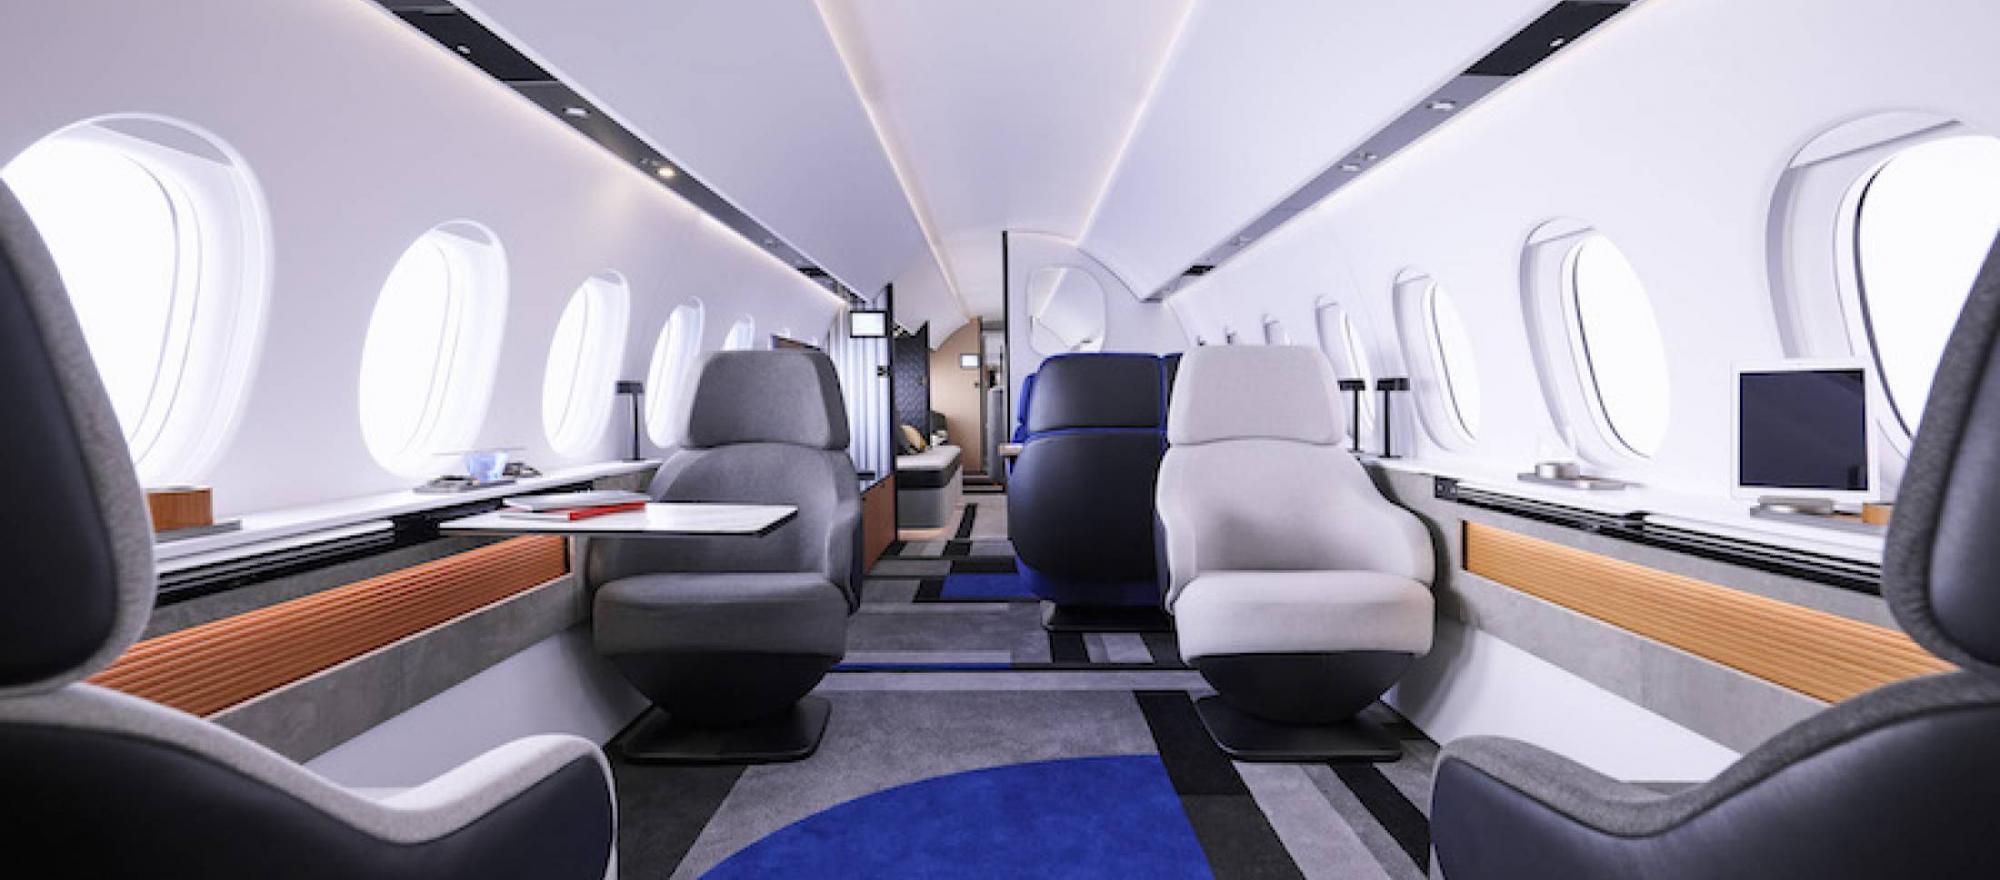 Dassault Falcon 10X interior (Photo: Dassault Aviation)